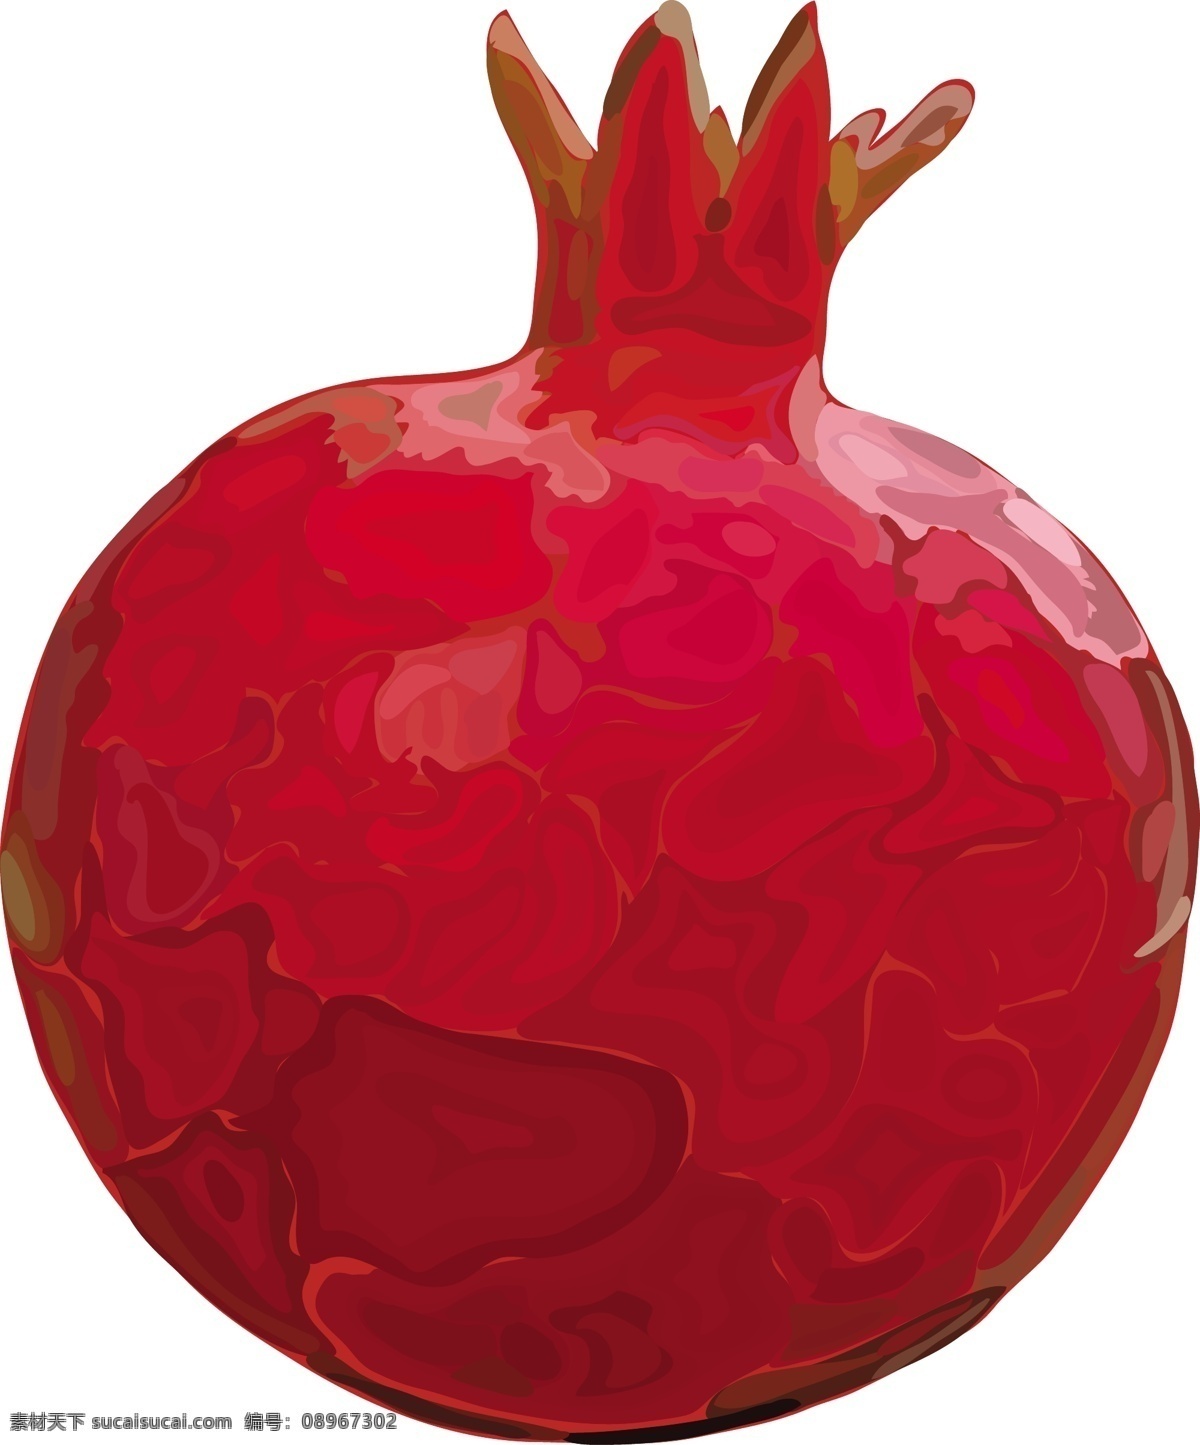 红色 水彩 卡通 手绘 石榴 矢量 水果